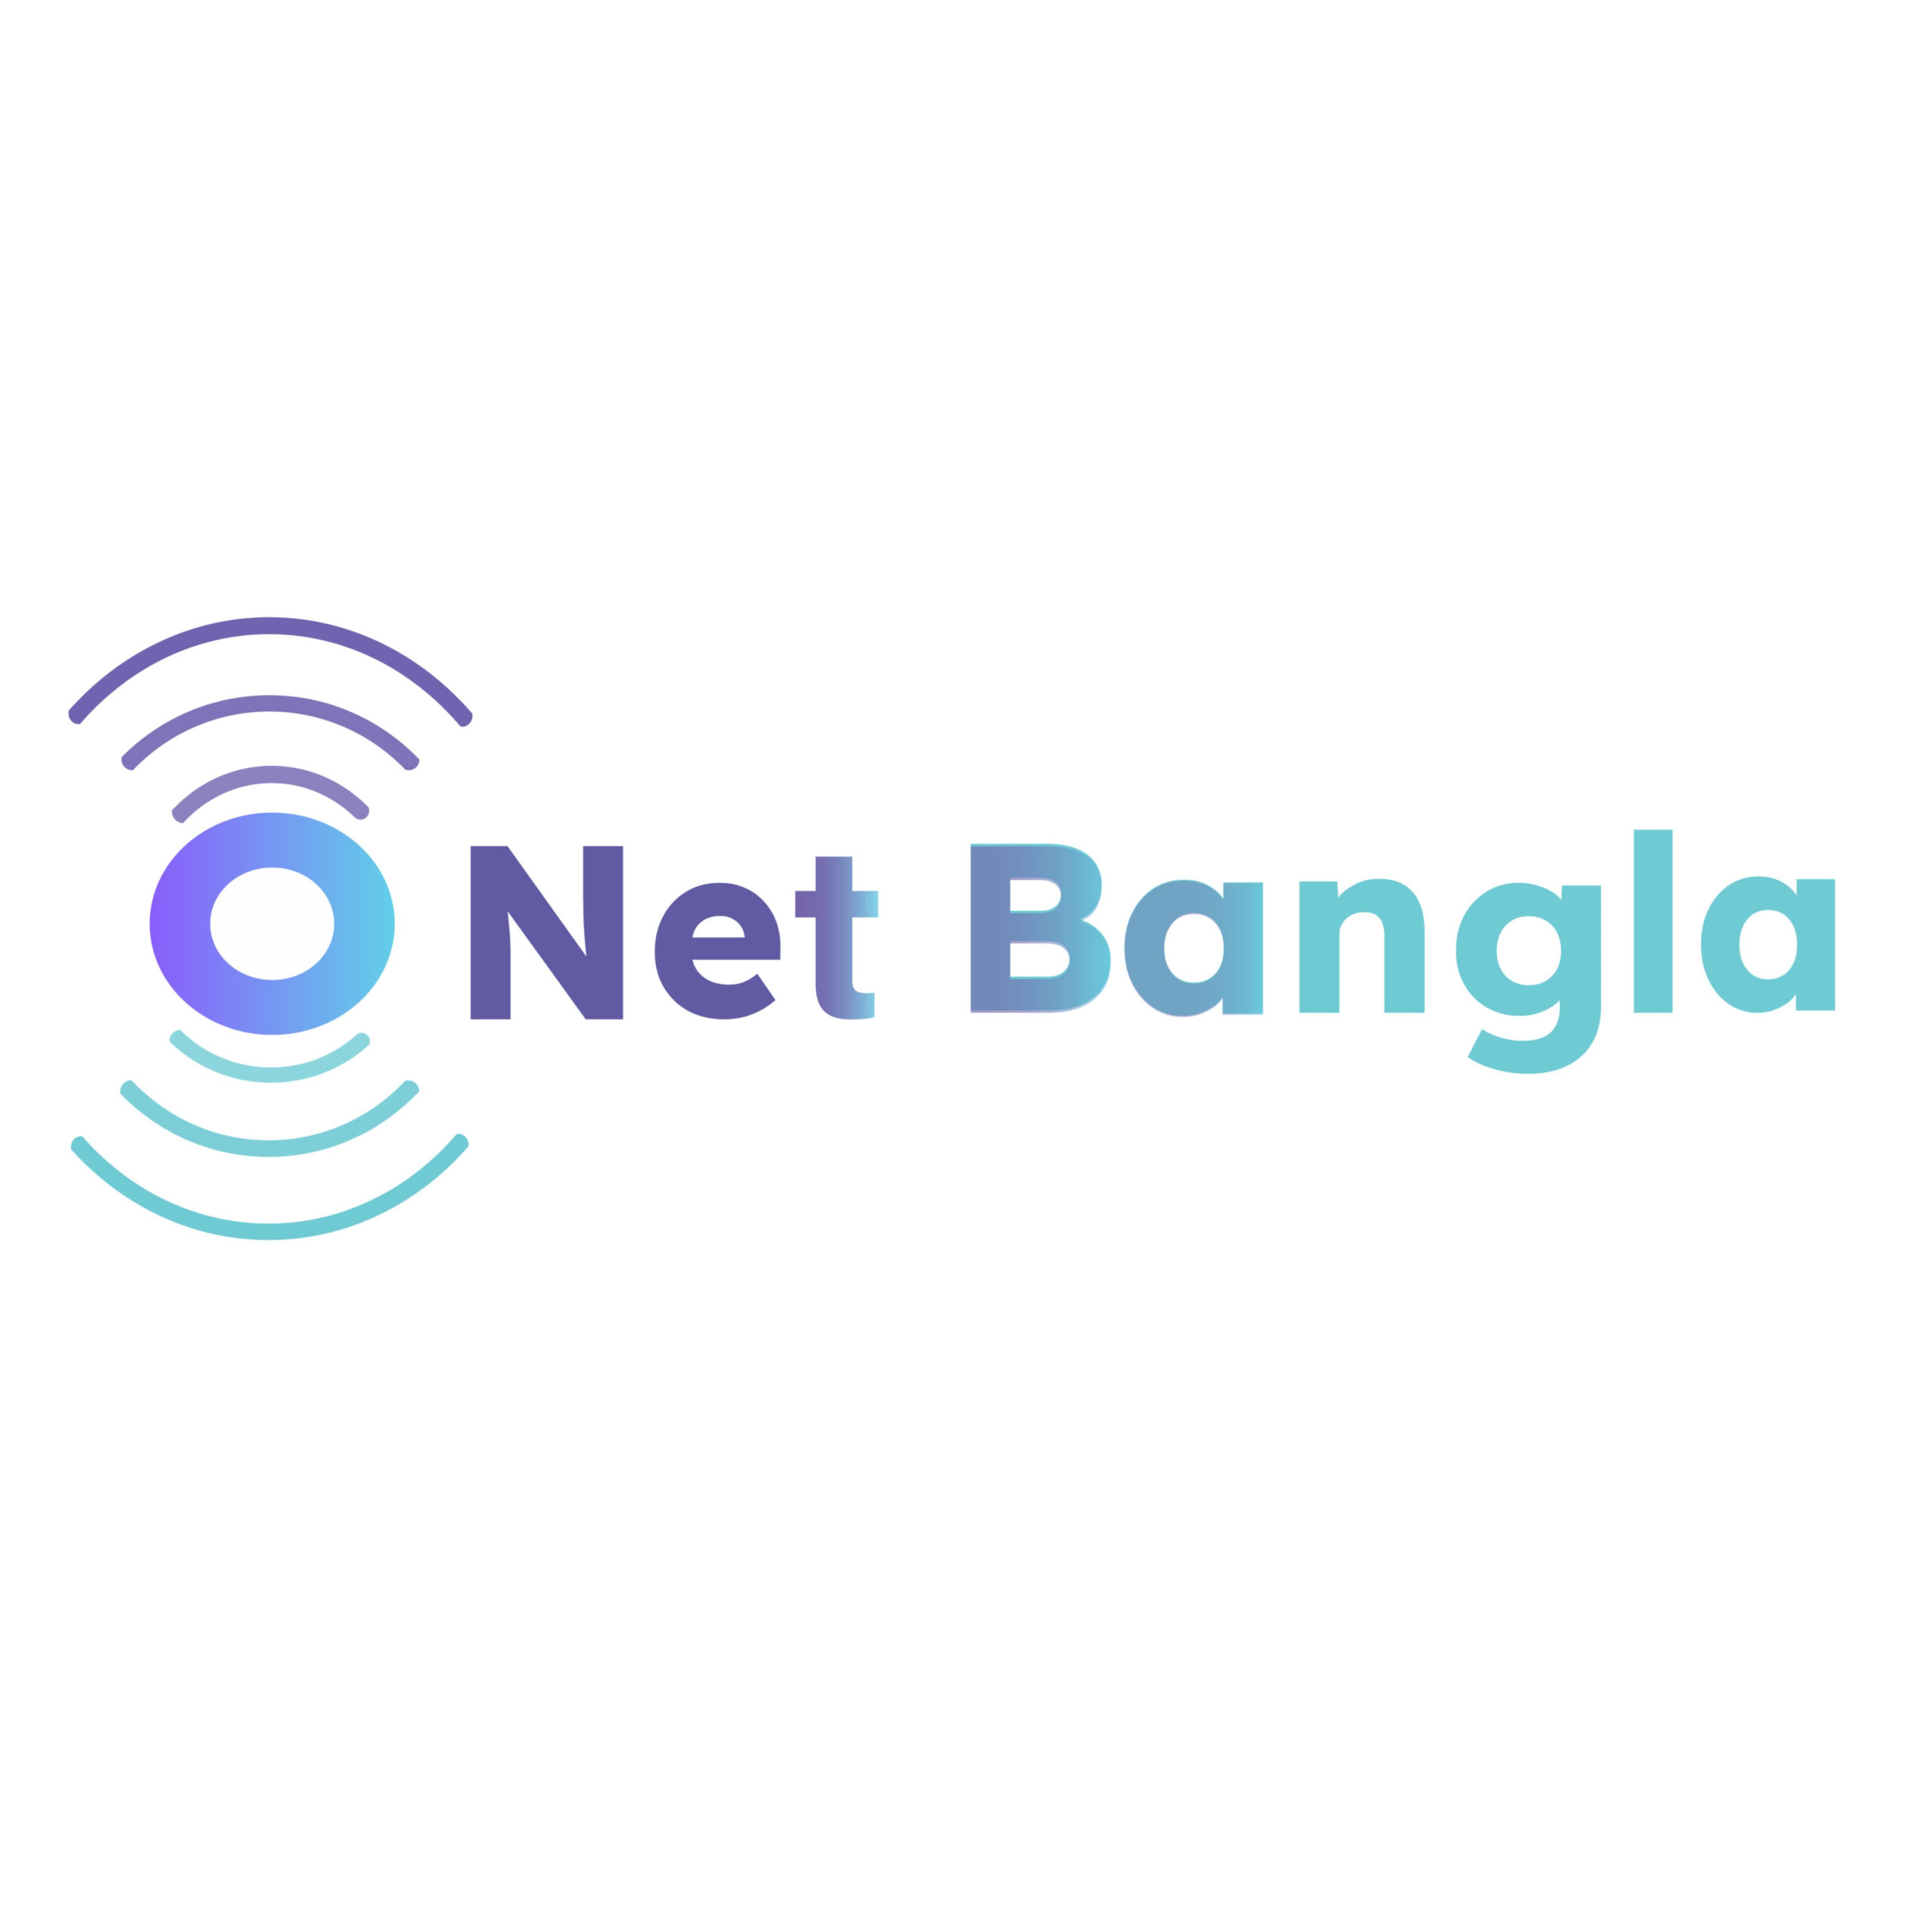 Net bangla logo